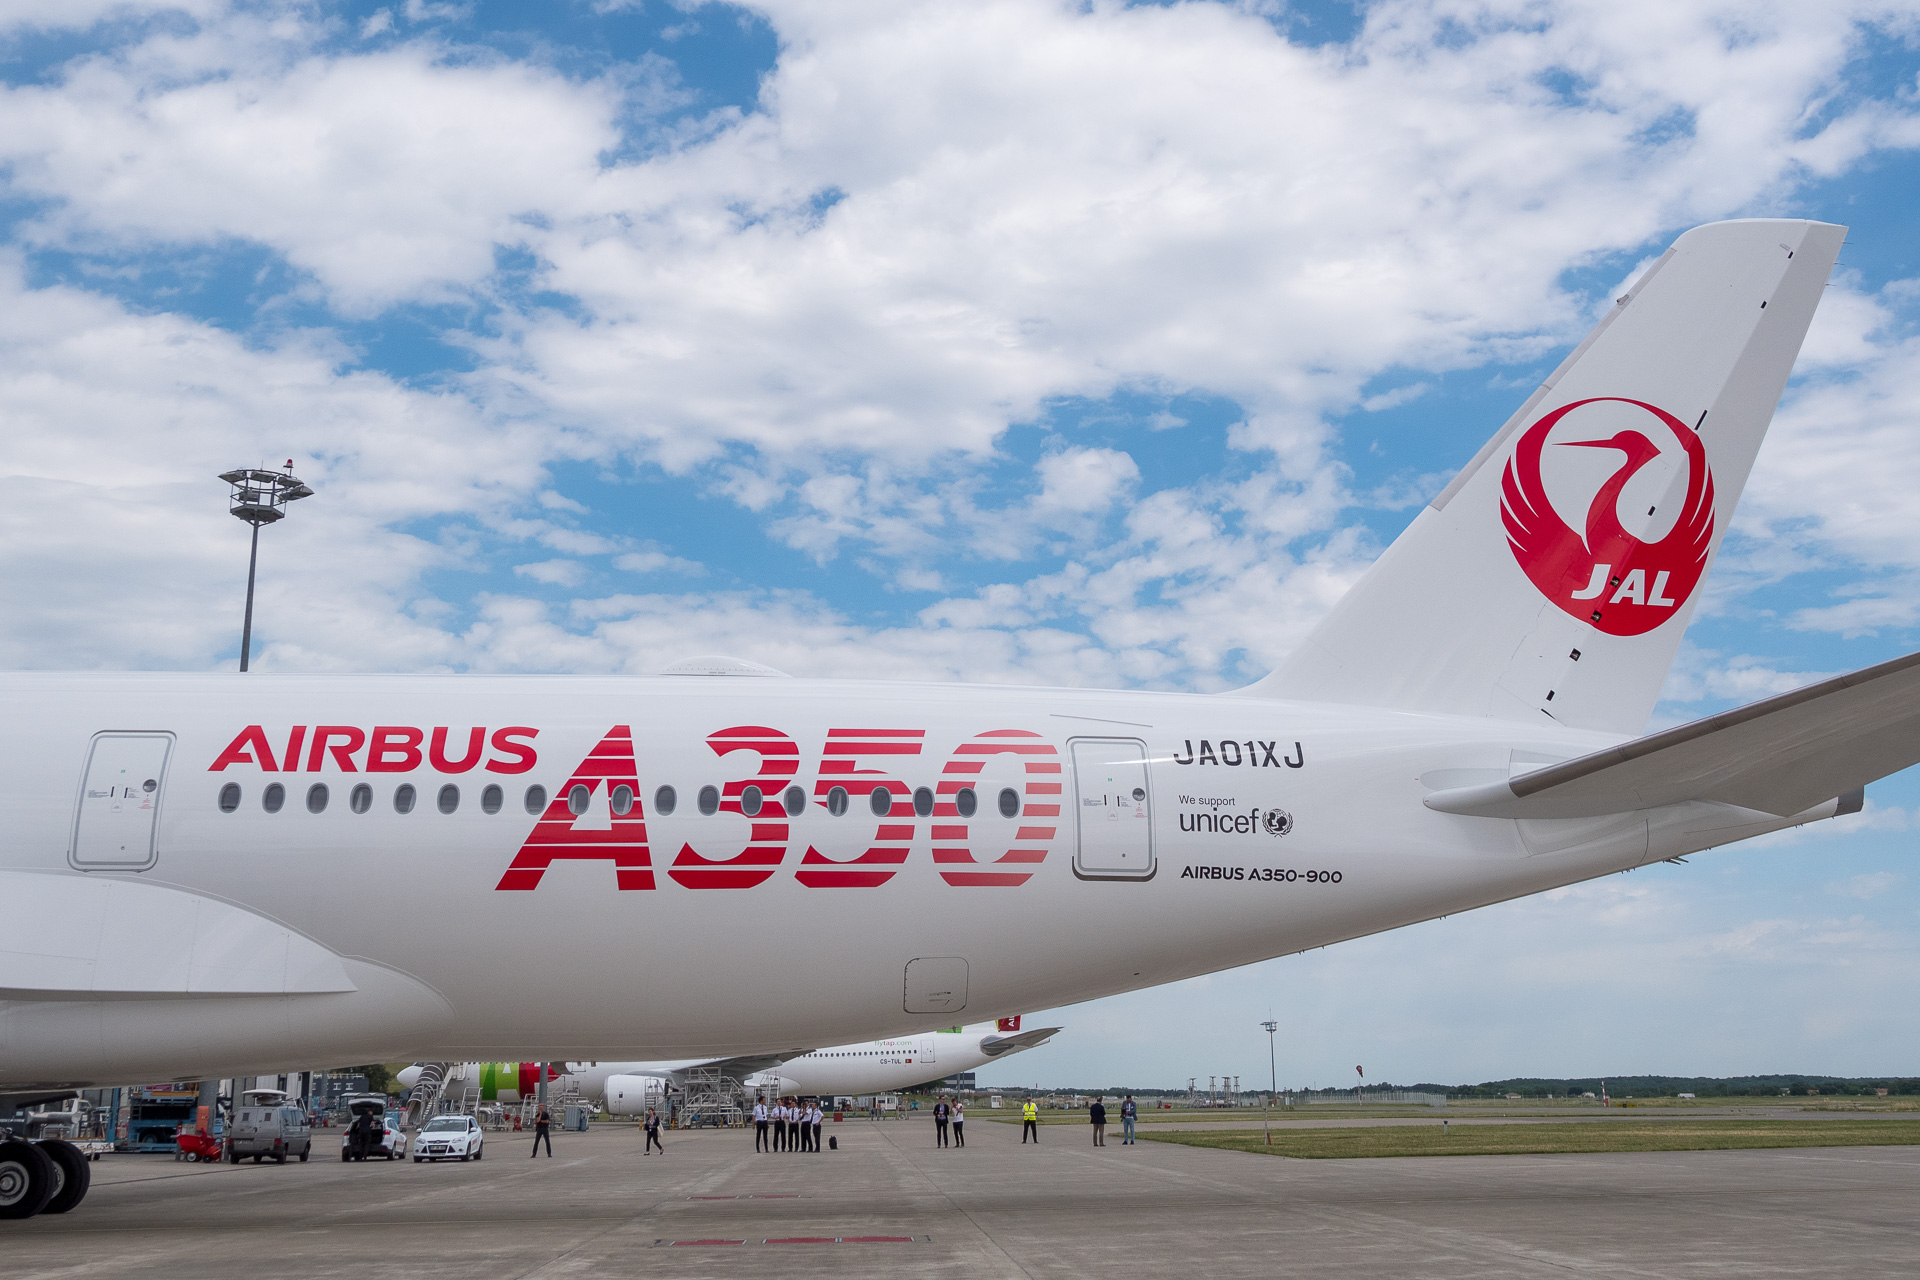 挑戦 を表わす赤いa350ロゴ Jalが新規導入するエアバス A350 900初号機を写真で紹介 機内wi Fi インターネットは国内線向け従来機からシステムを変更か トラベル Watch